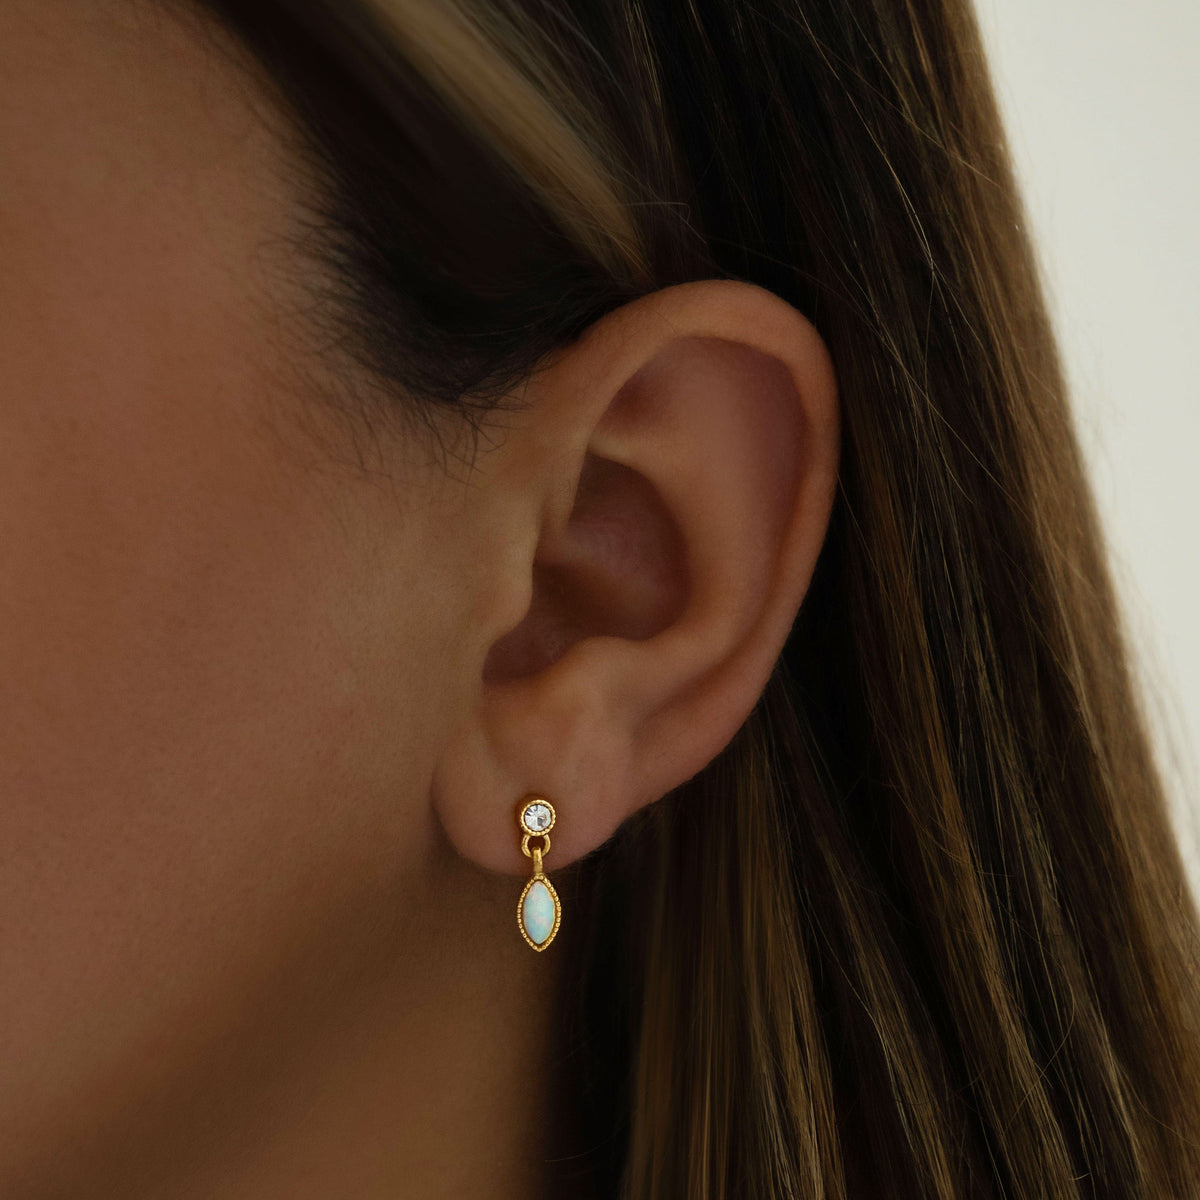 Bohomoon Stainless Steel Tai Opal Stud Earrings